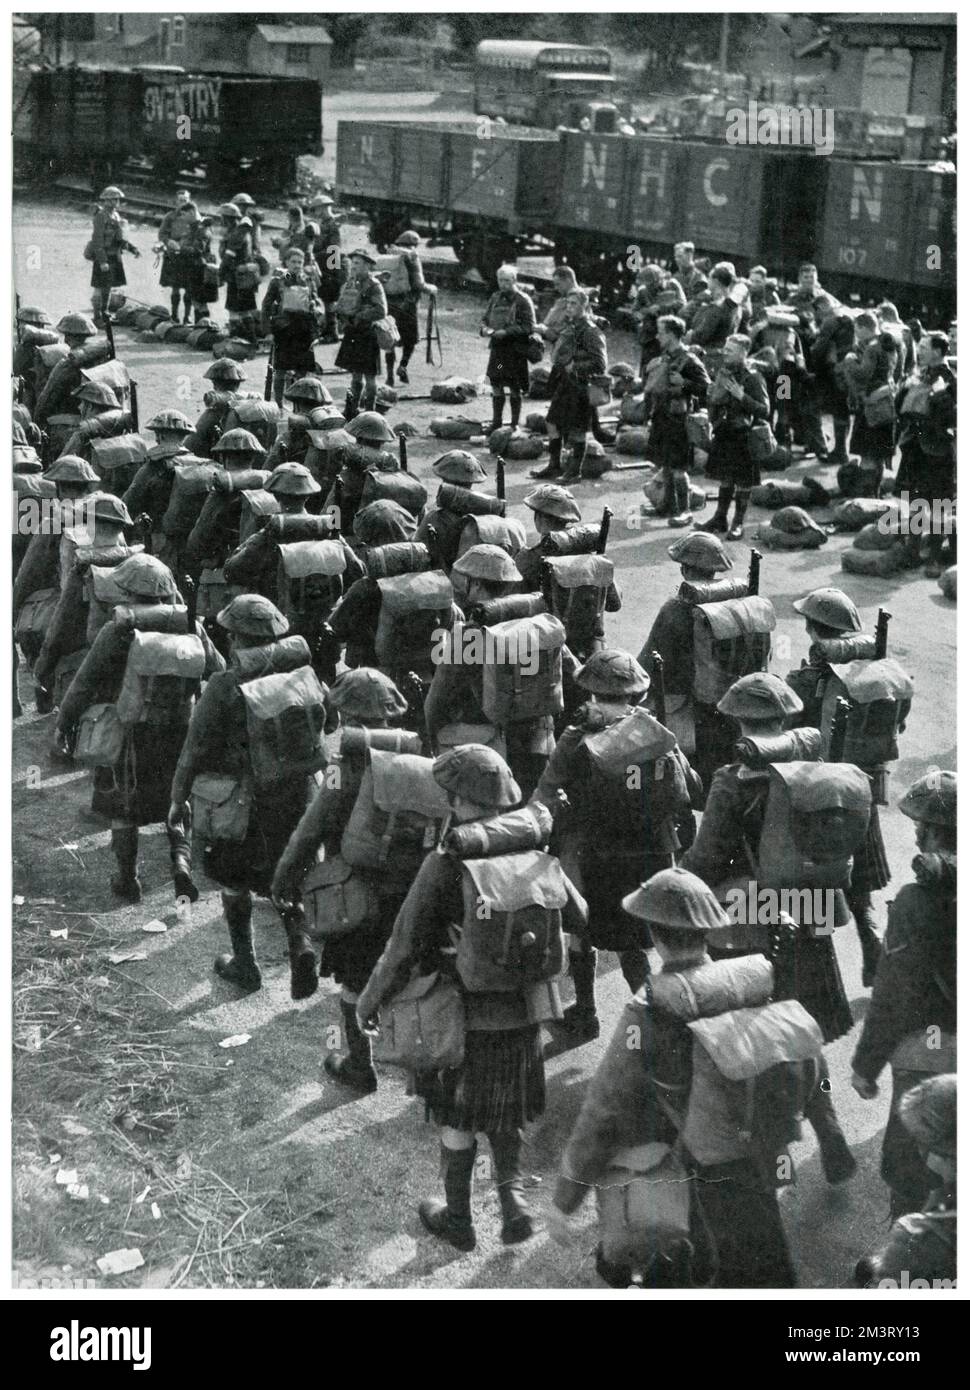 Los soldados escoceses se mostraron alineados y preparando su equipo antes de salir a luchar en Francia, poco después del estallido de la guerra. 1939 Foto de stock